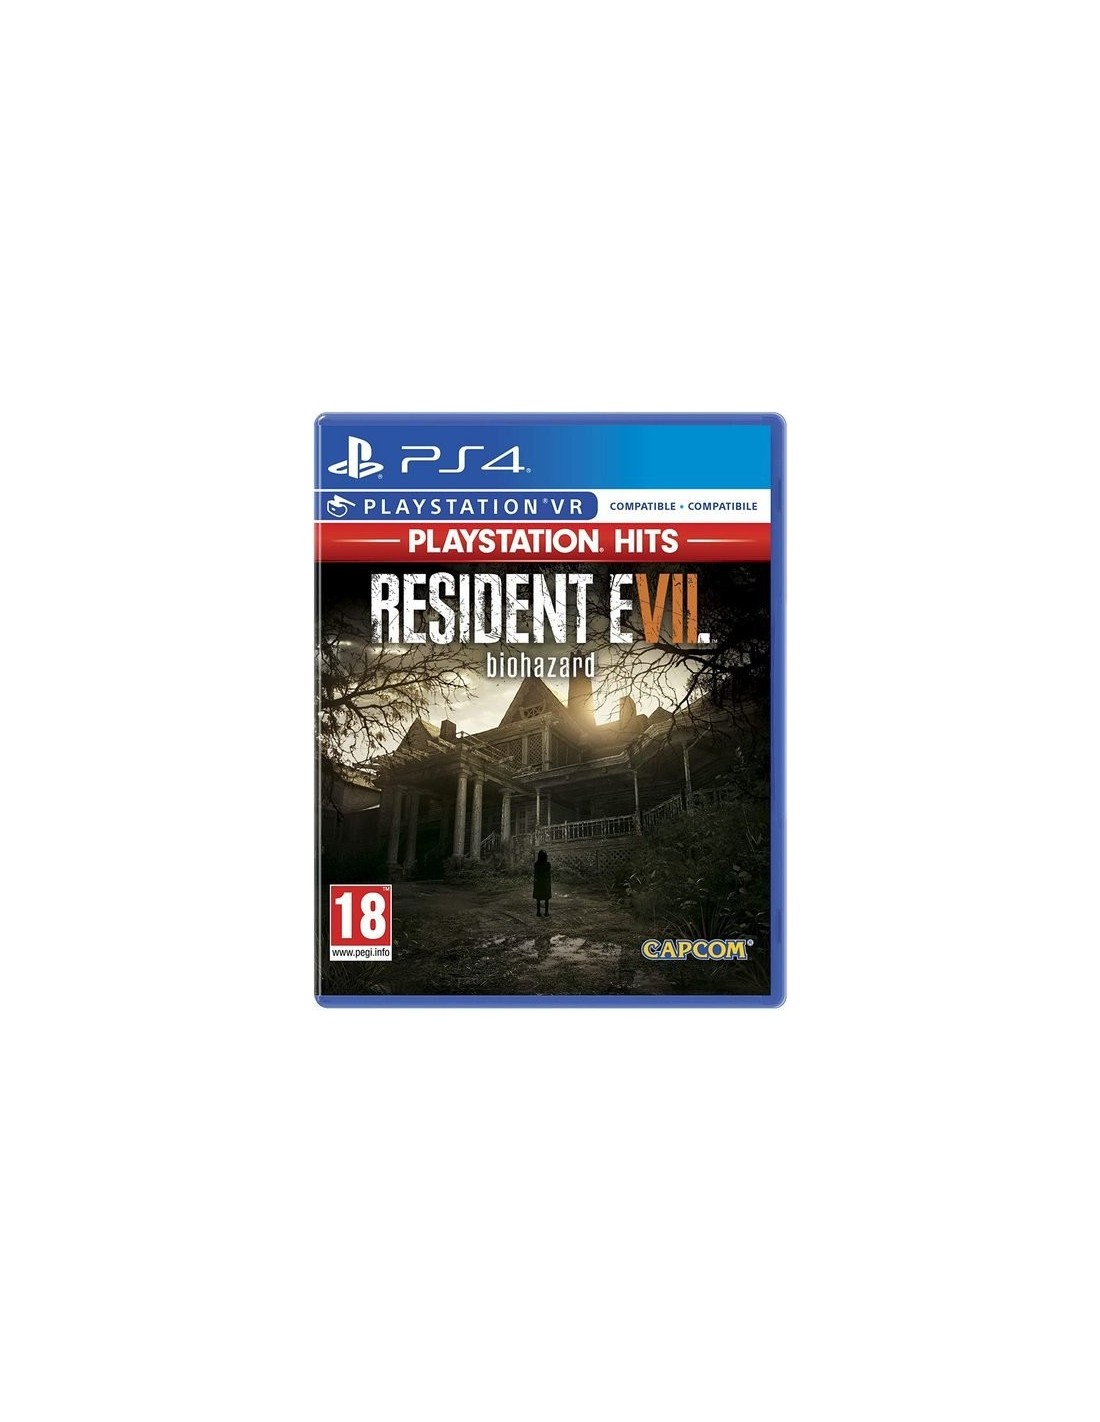 Capcom Resident Evil 7, PlayStation Hits PS4 PlayStation 4 Inglés, Italiano